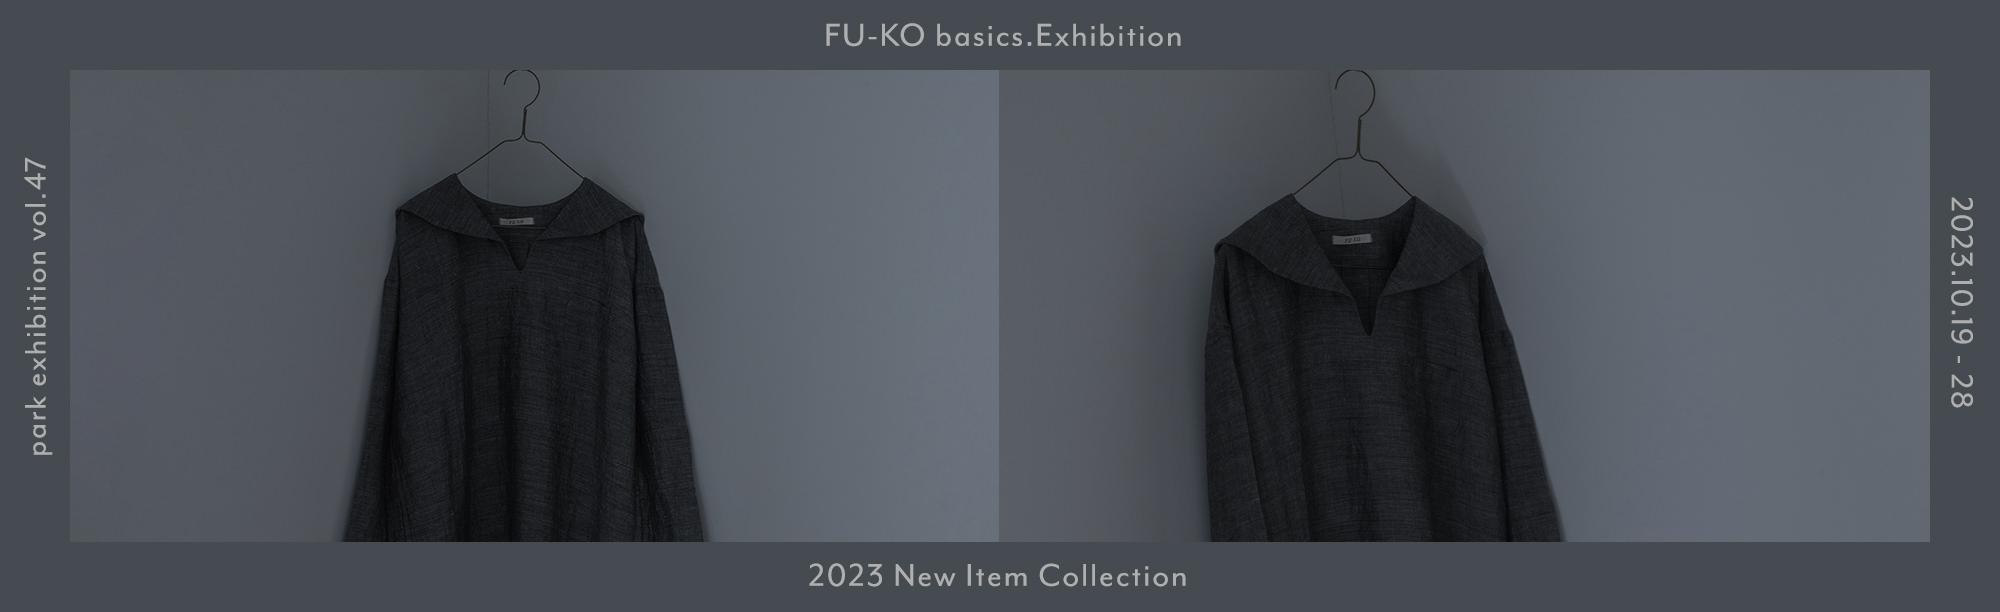 FU-KO basics. Exhibition